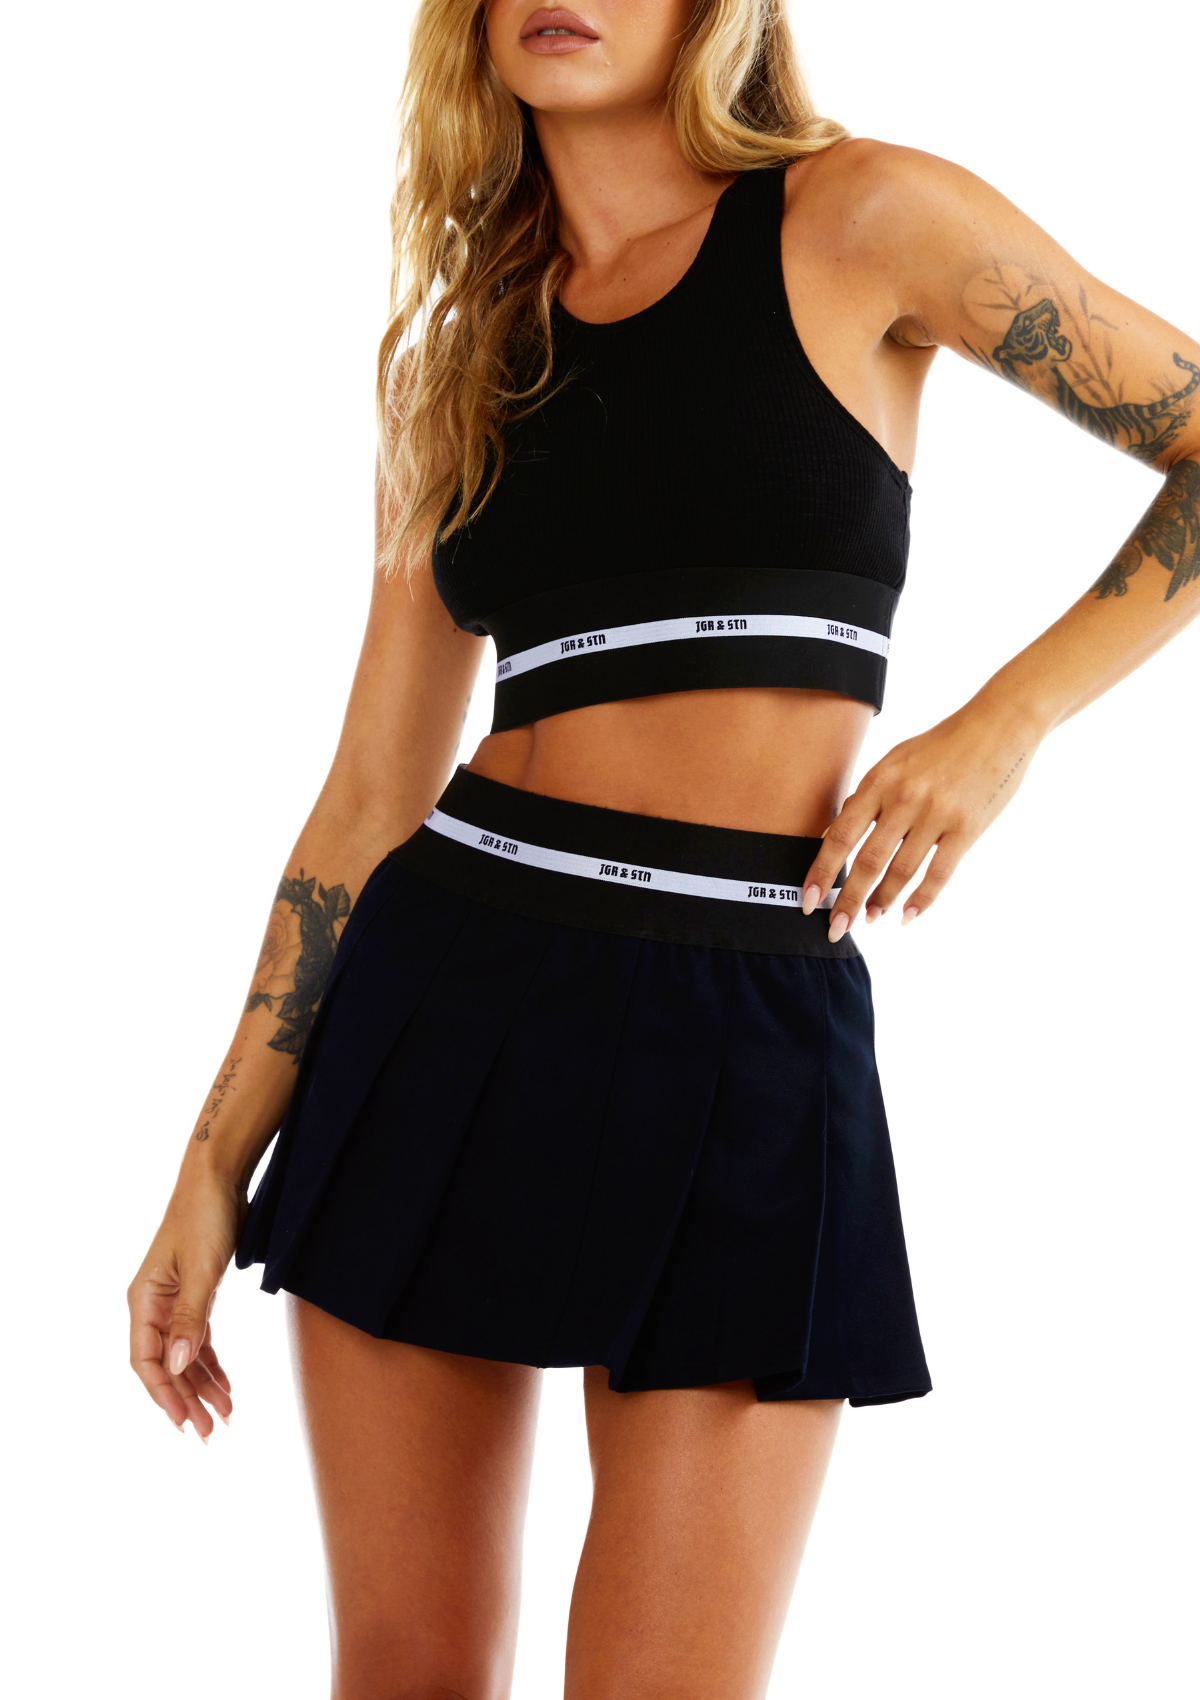 Erin Mini Skirt Black and White Sport Lifestyle Tennis skirt branded mini pleated skirt